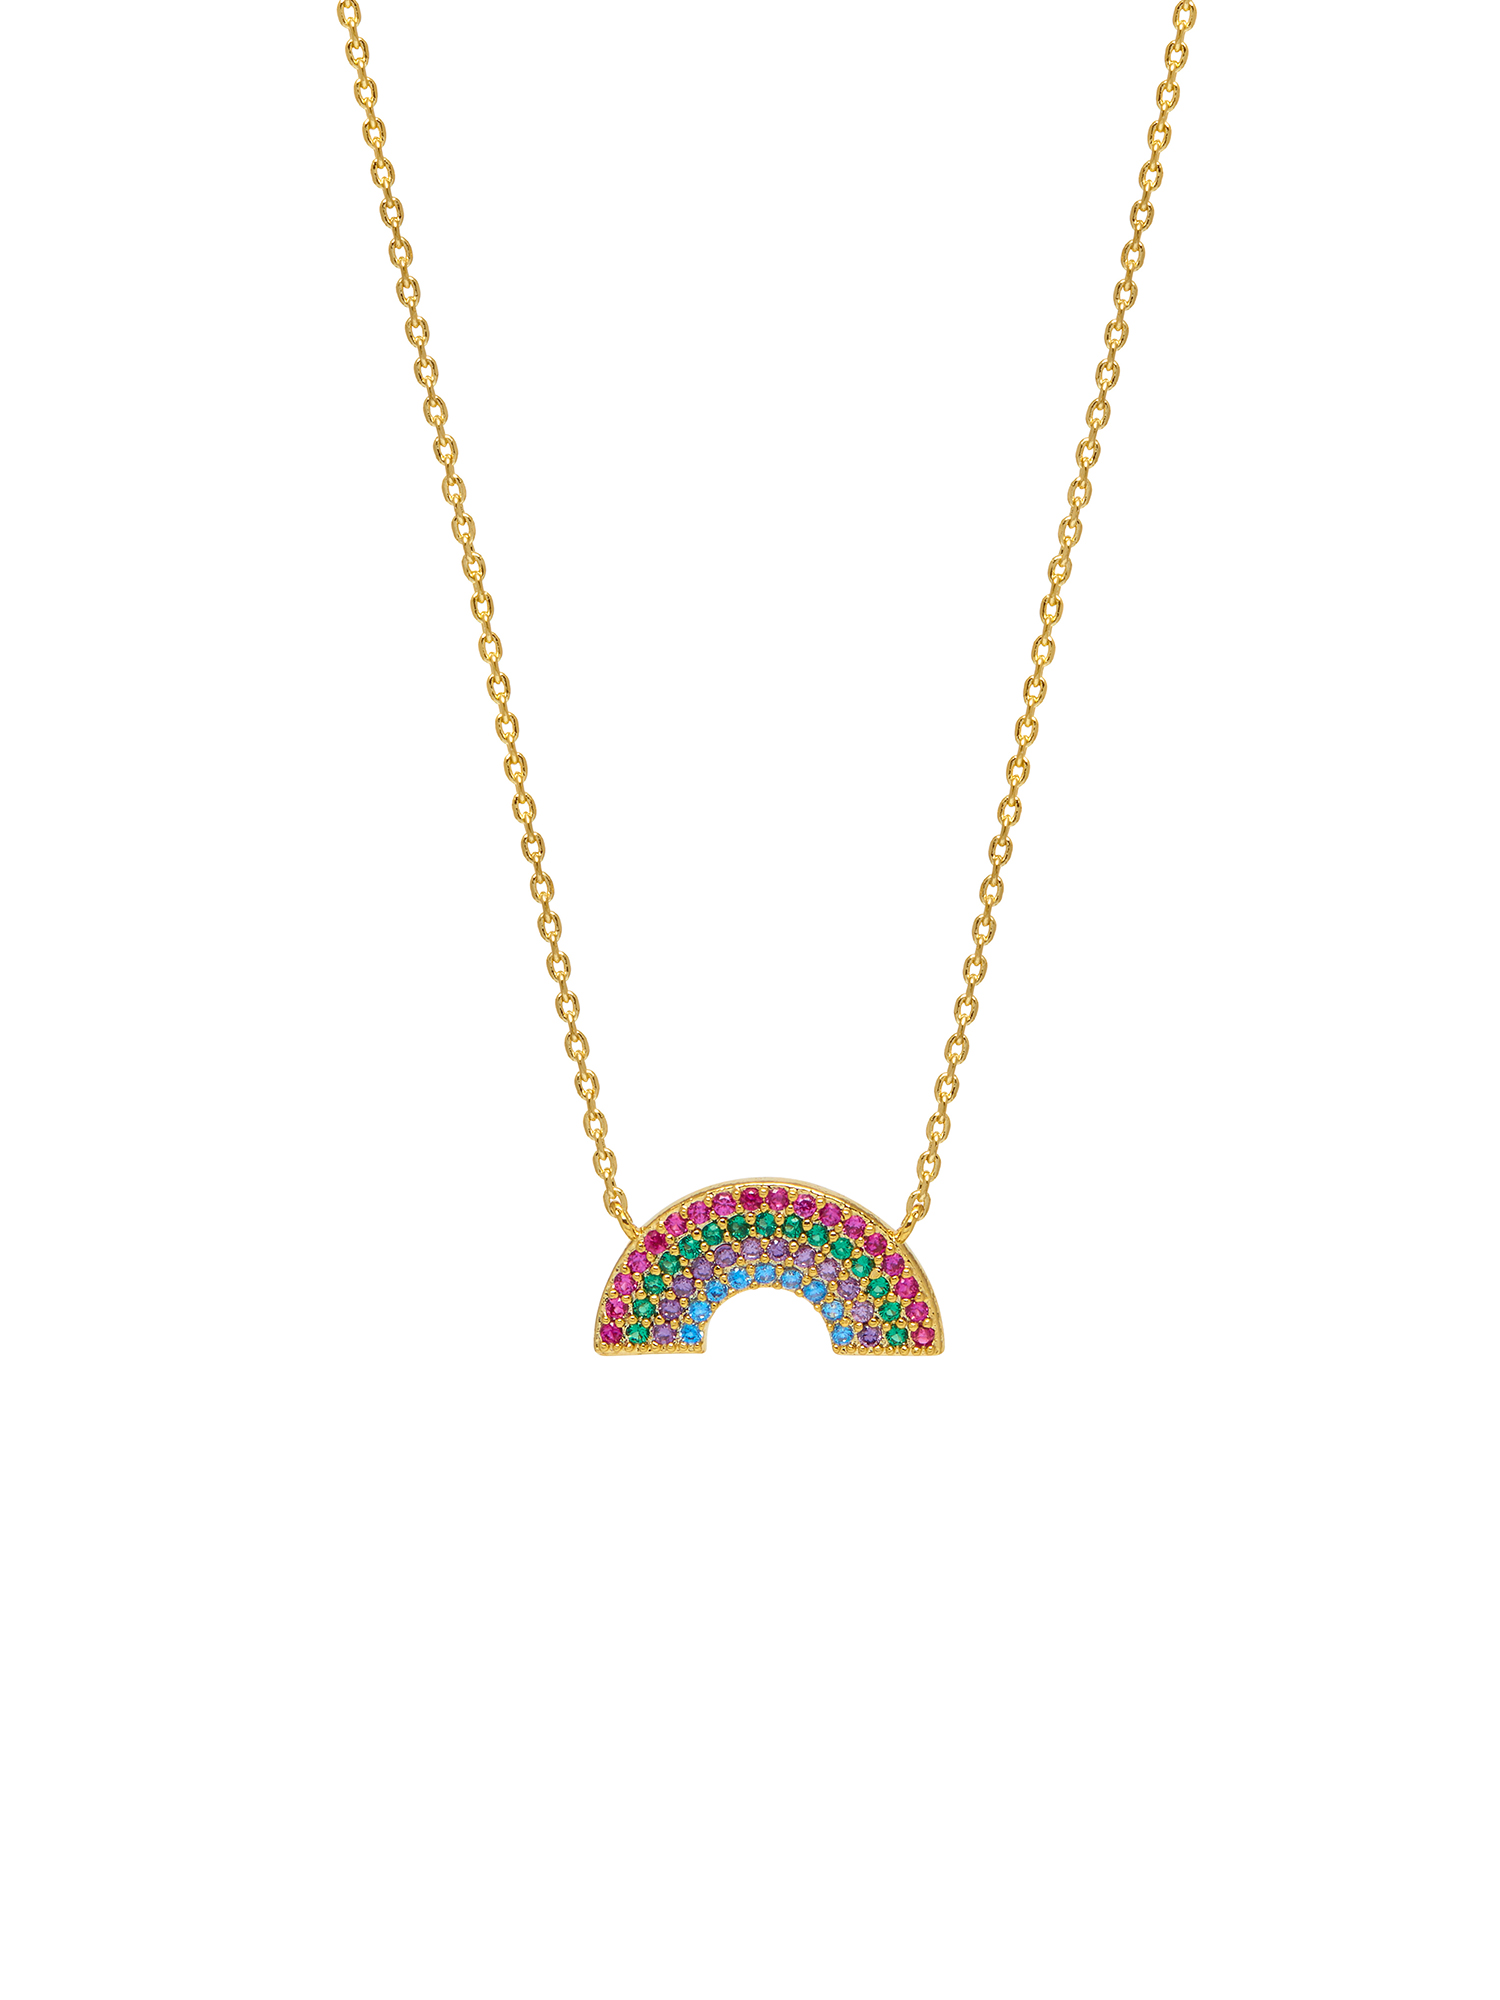 skulZ Abbigliamento Estella Bartlett Collana Full Rainbow in Oro 